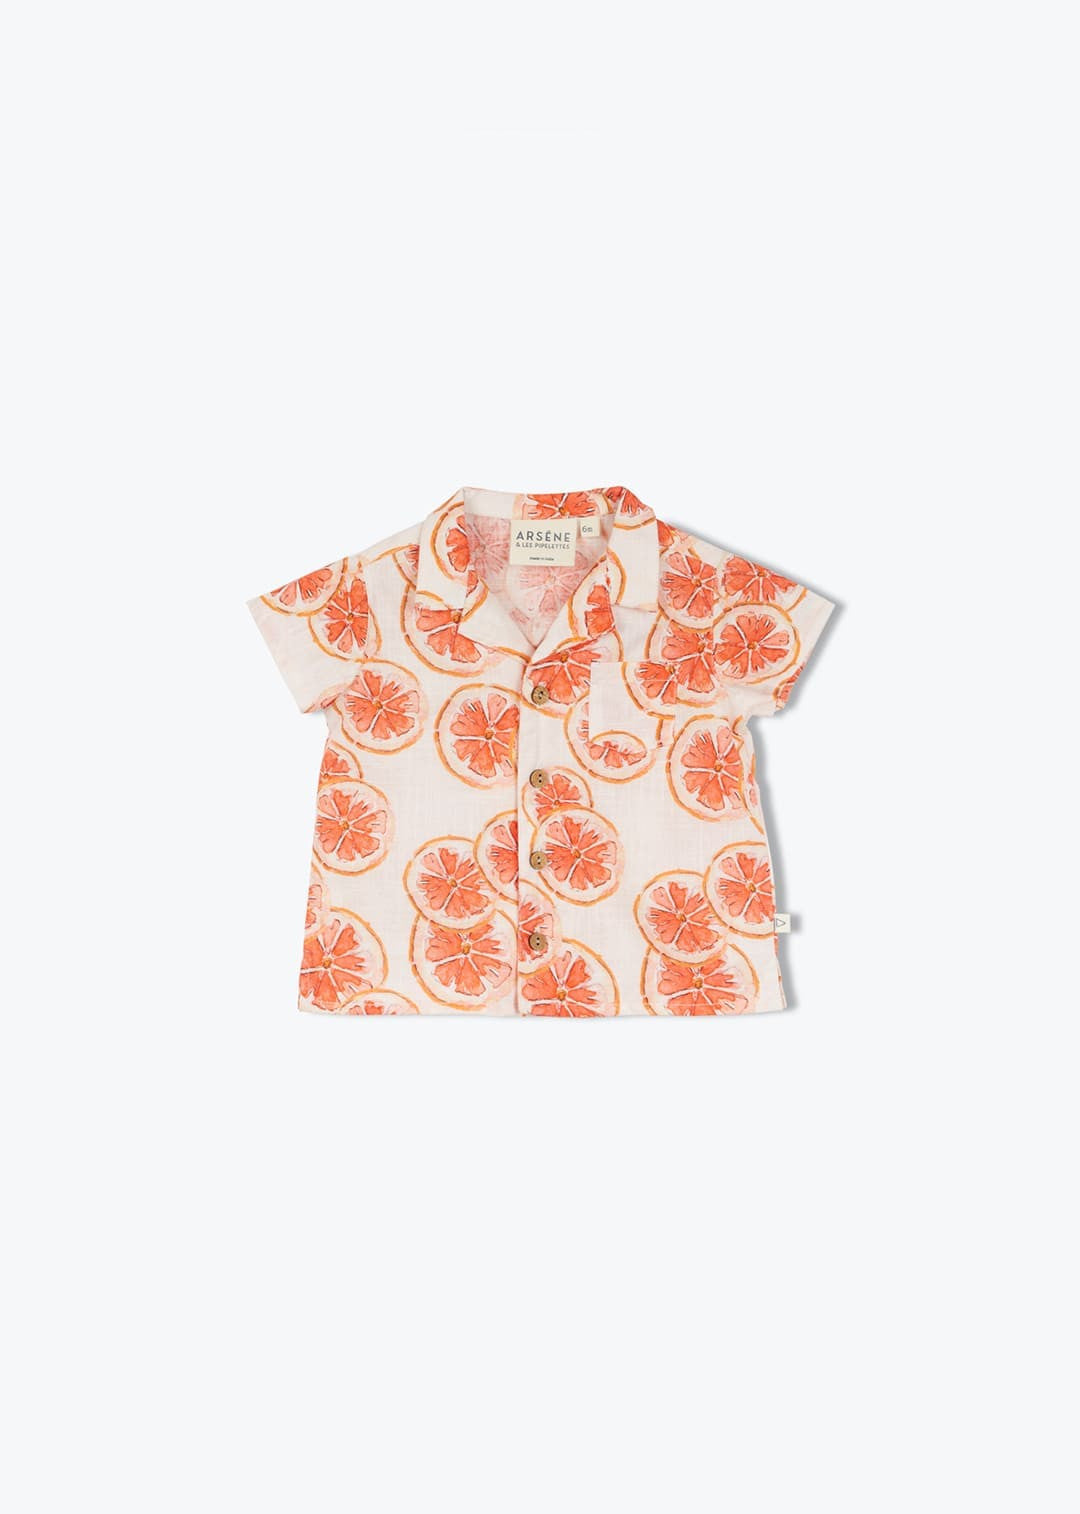 Exklusiv bedrucktes Babyhemd mit Grapefruits-Druck von Arsène et les Pipelettes .